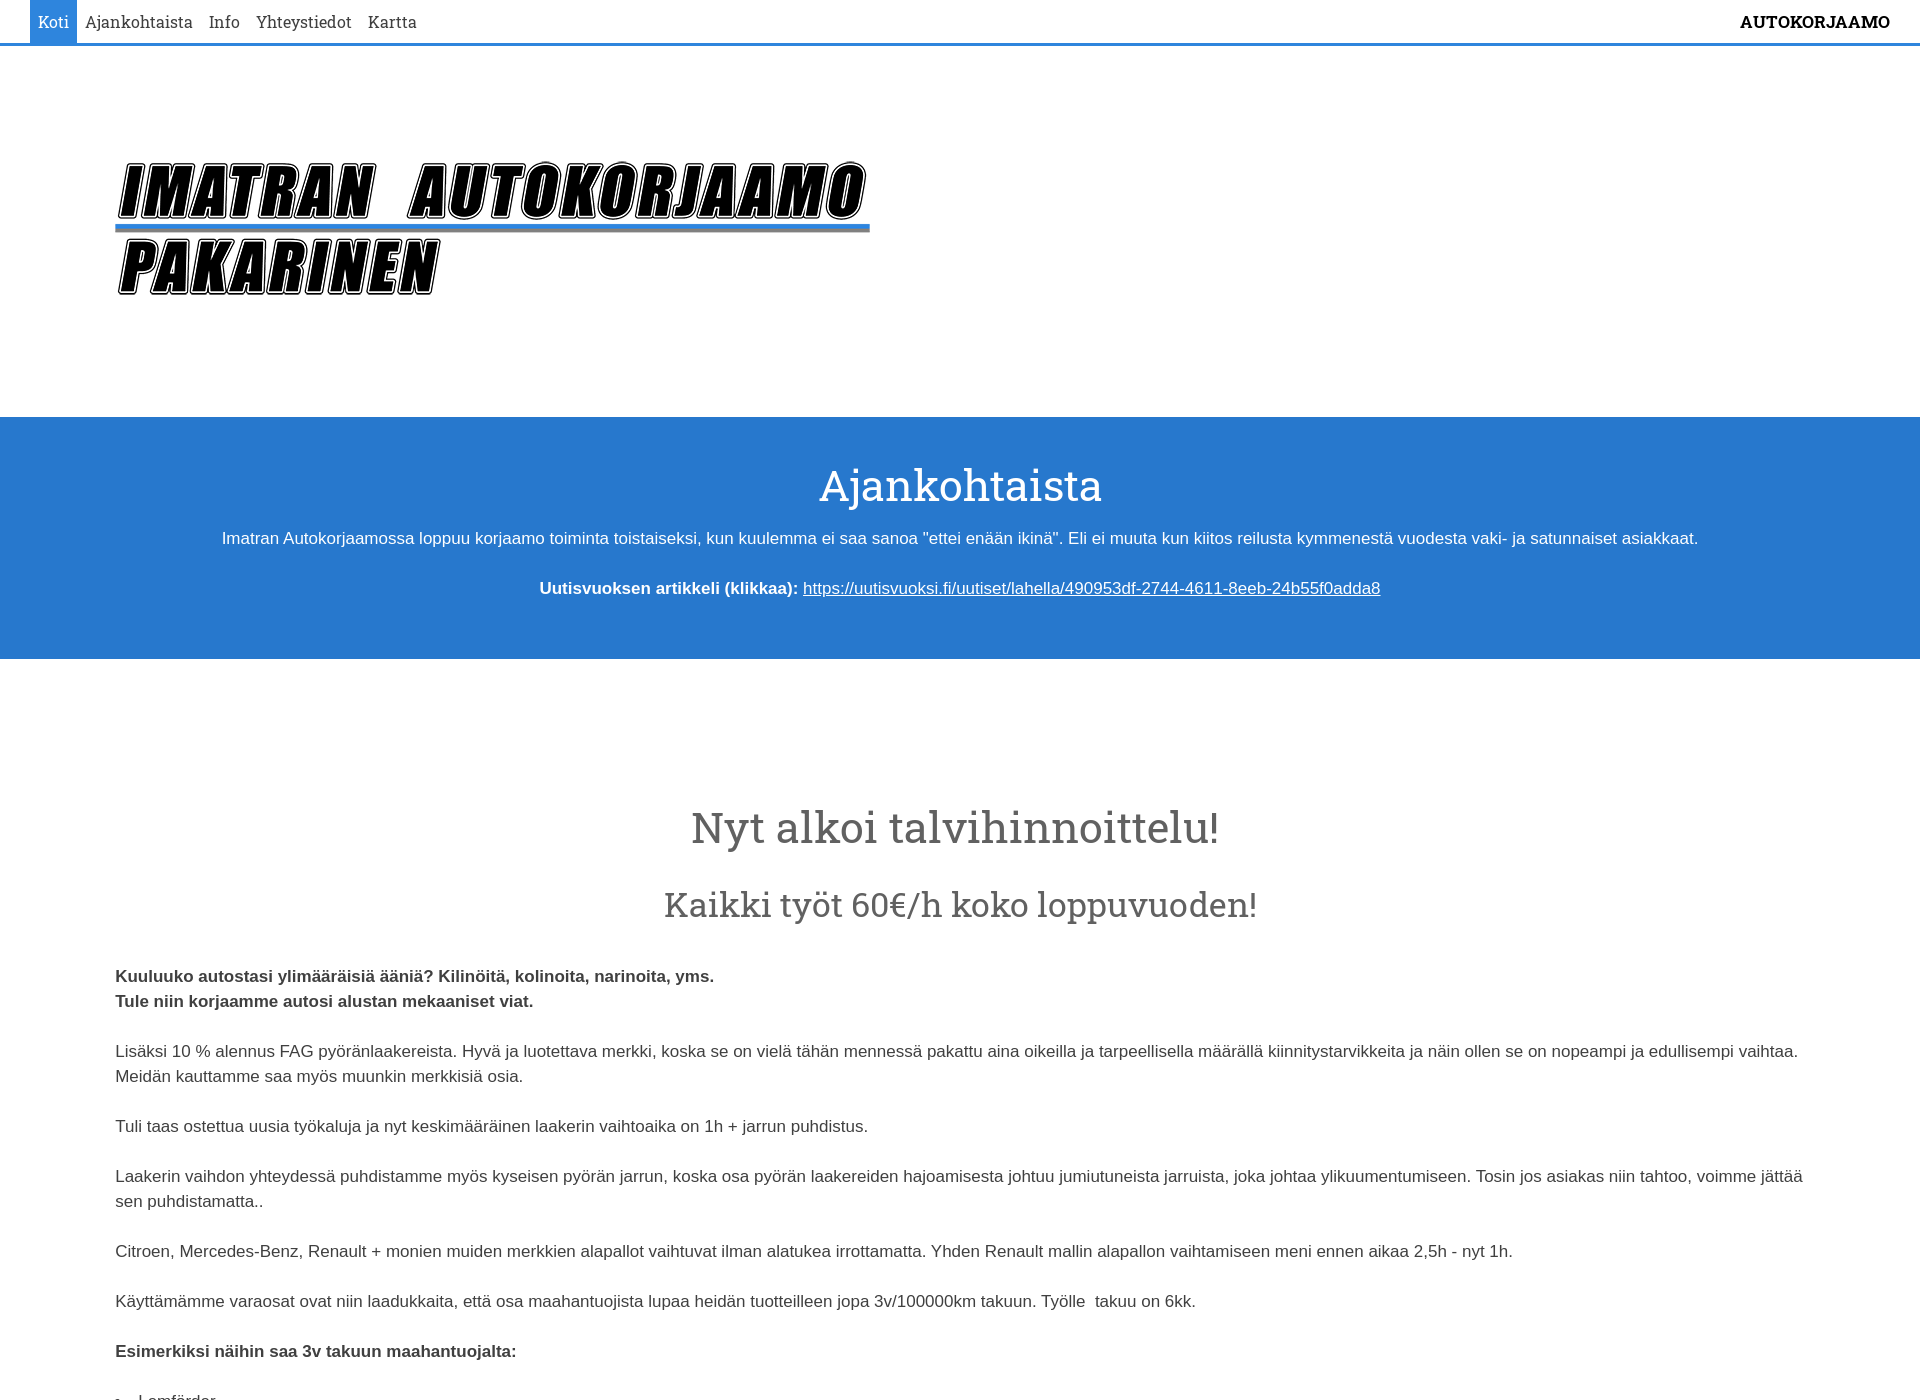 Näyttökuva imatranautokorjaamo.fi